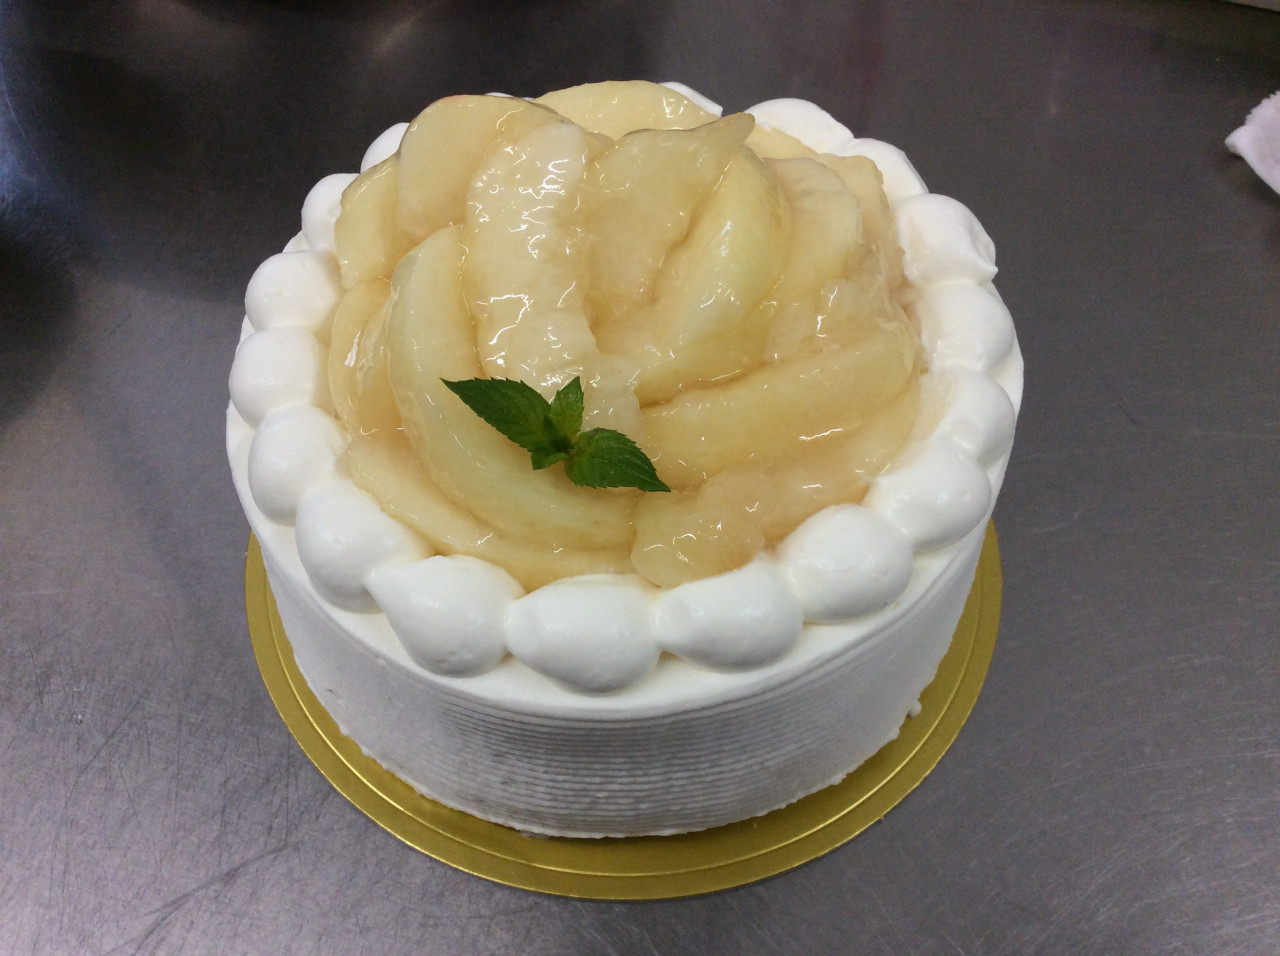 特注桃デコレーションケーキ 熊谷のイタリアンレストランが掲載するブログページをご覧ください